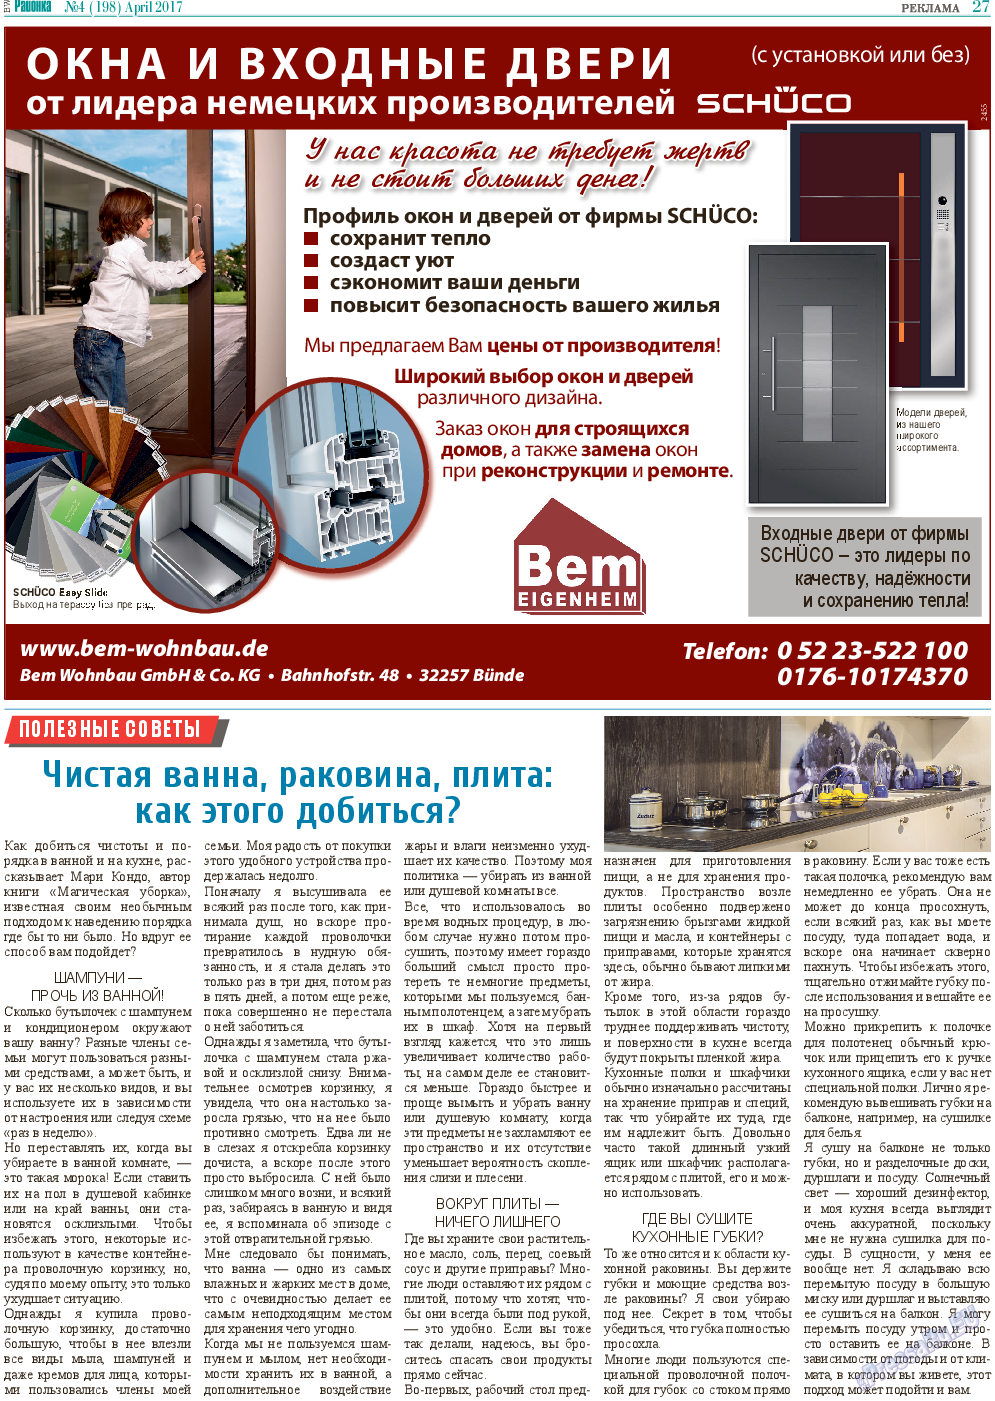 Районка-Süd-West, газета. 2017 №4 стр.27